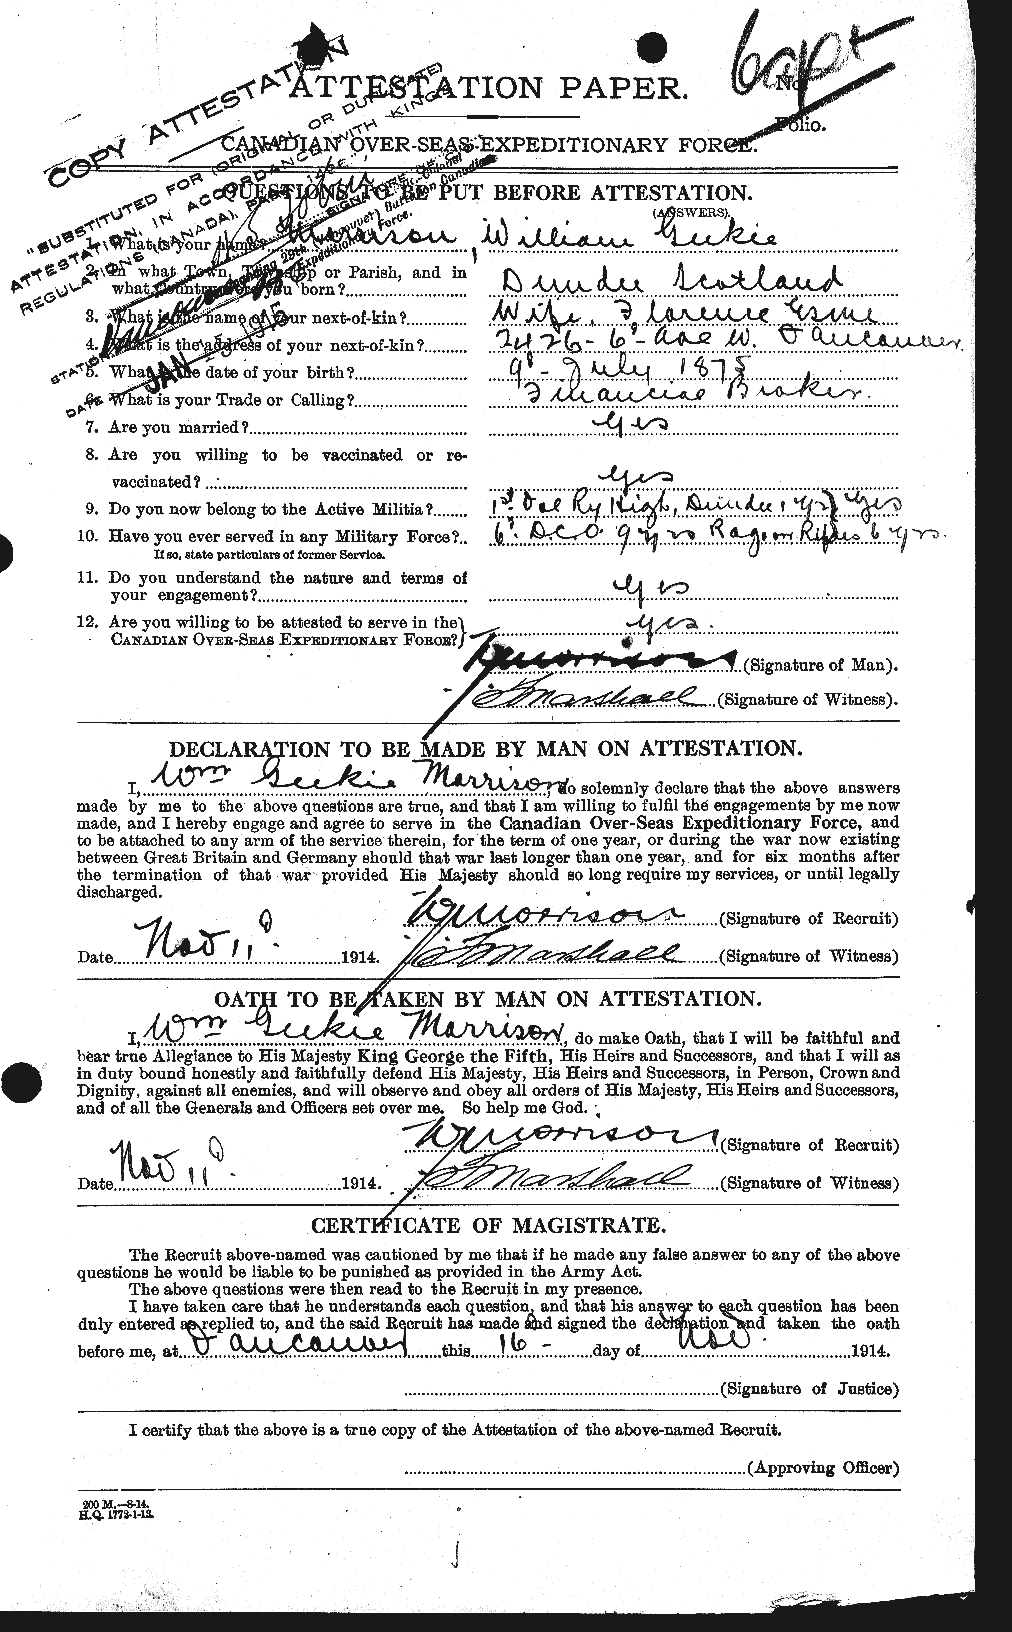 Dossiers du Personnel de la Première Guerre mondiale - CEC 509296a